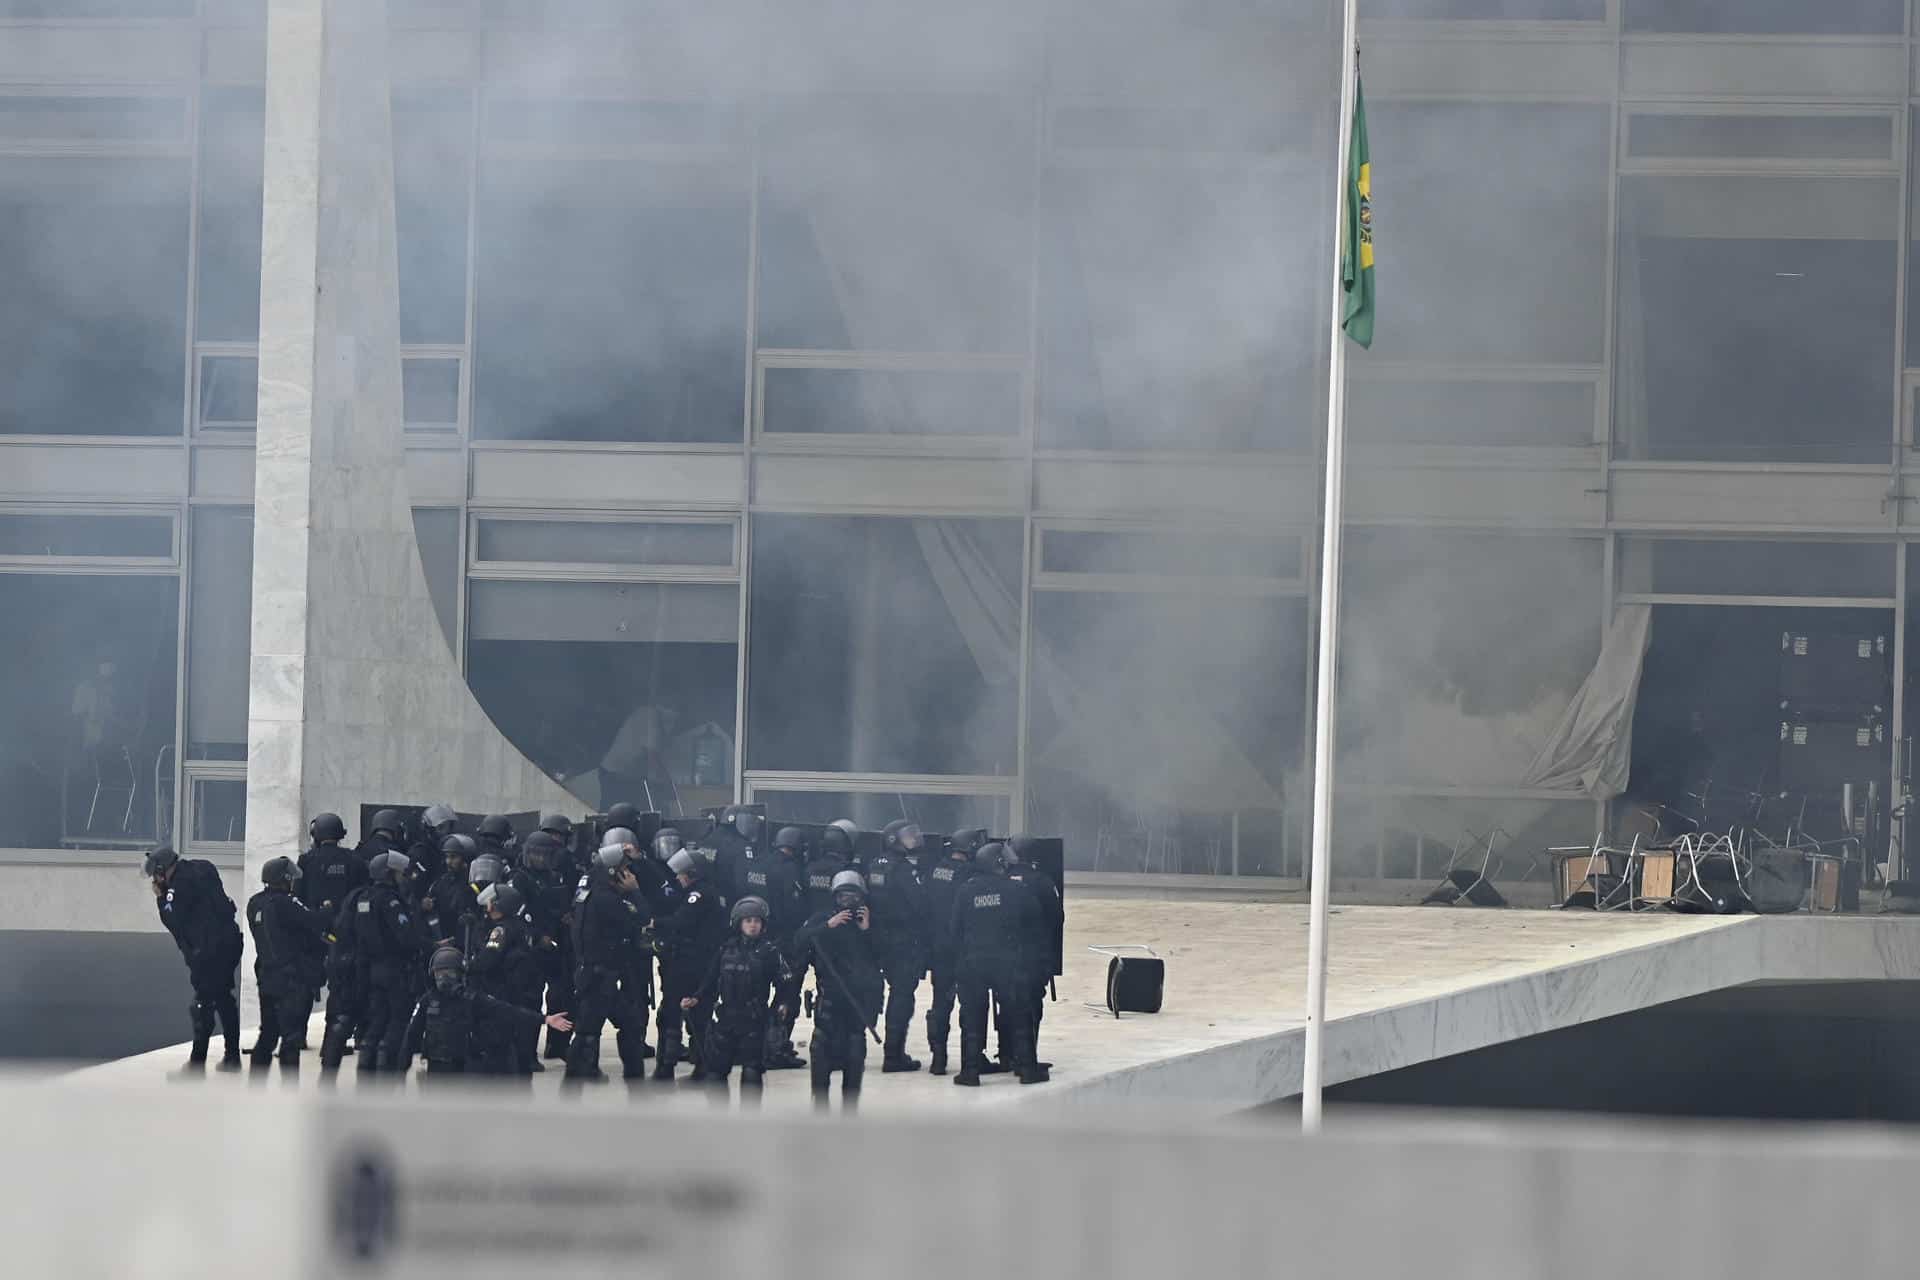 Decenas de agentes subieron la rampa que da acceso a la primera planta del palacio de Planalto disparando gases lacrimógenos, mientras otro grupo de uniformados rodeaba el edificio.